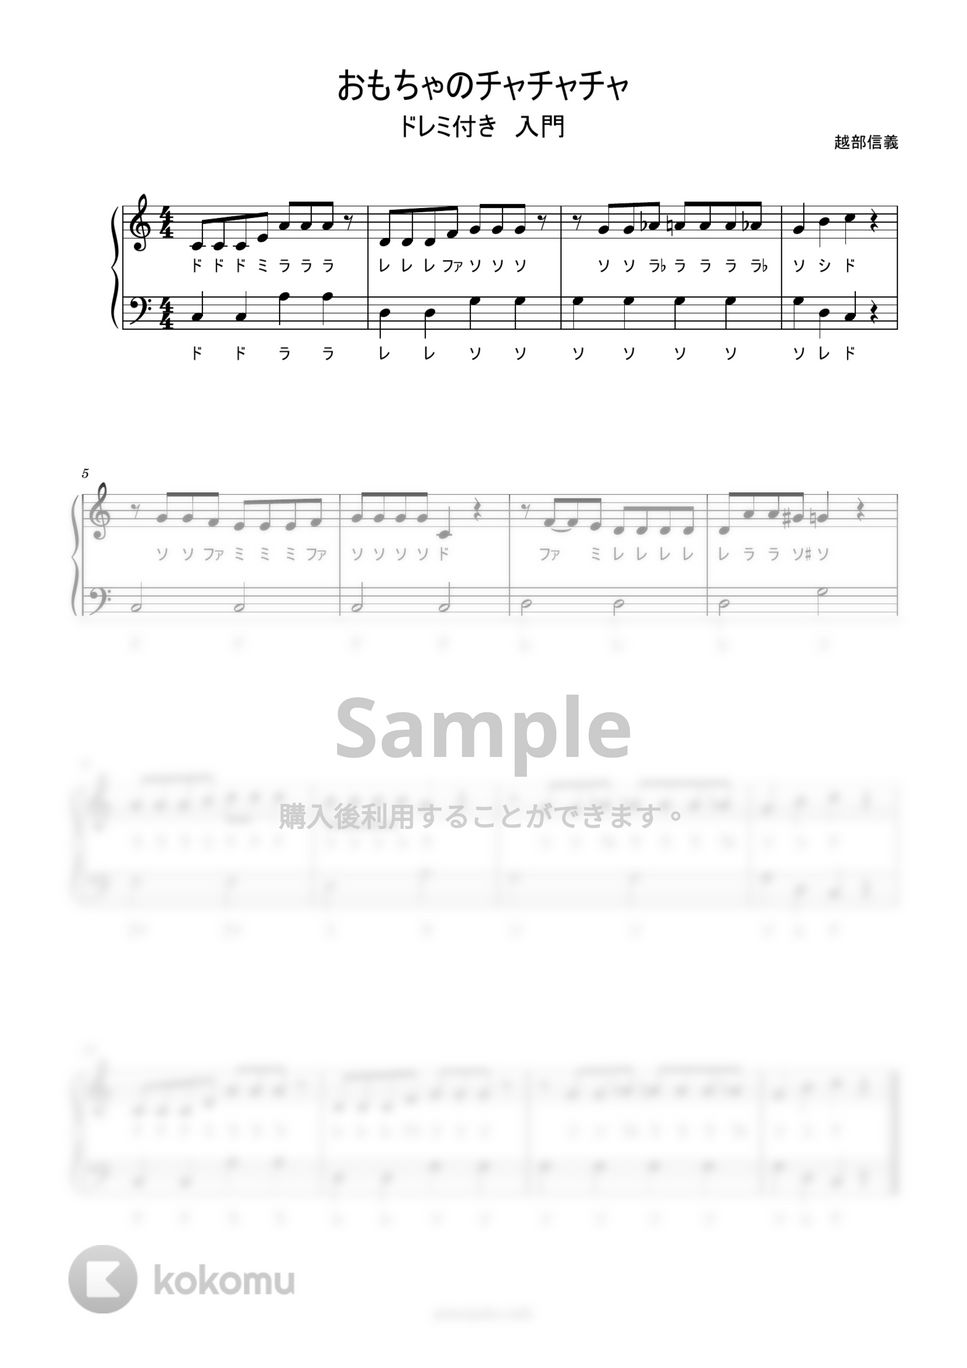 おもちゃのチャチャチャ (ドレミ付き簡単楽譜) by ピアノ塾